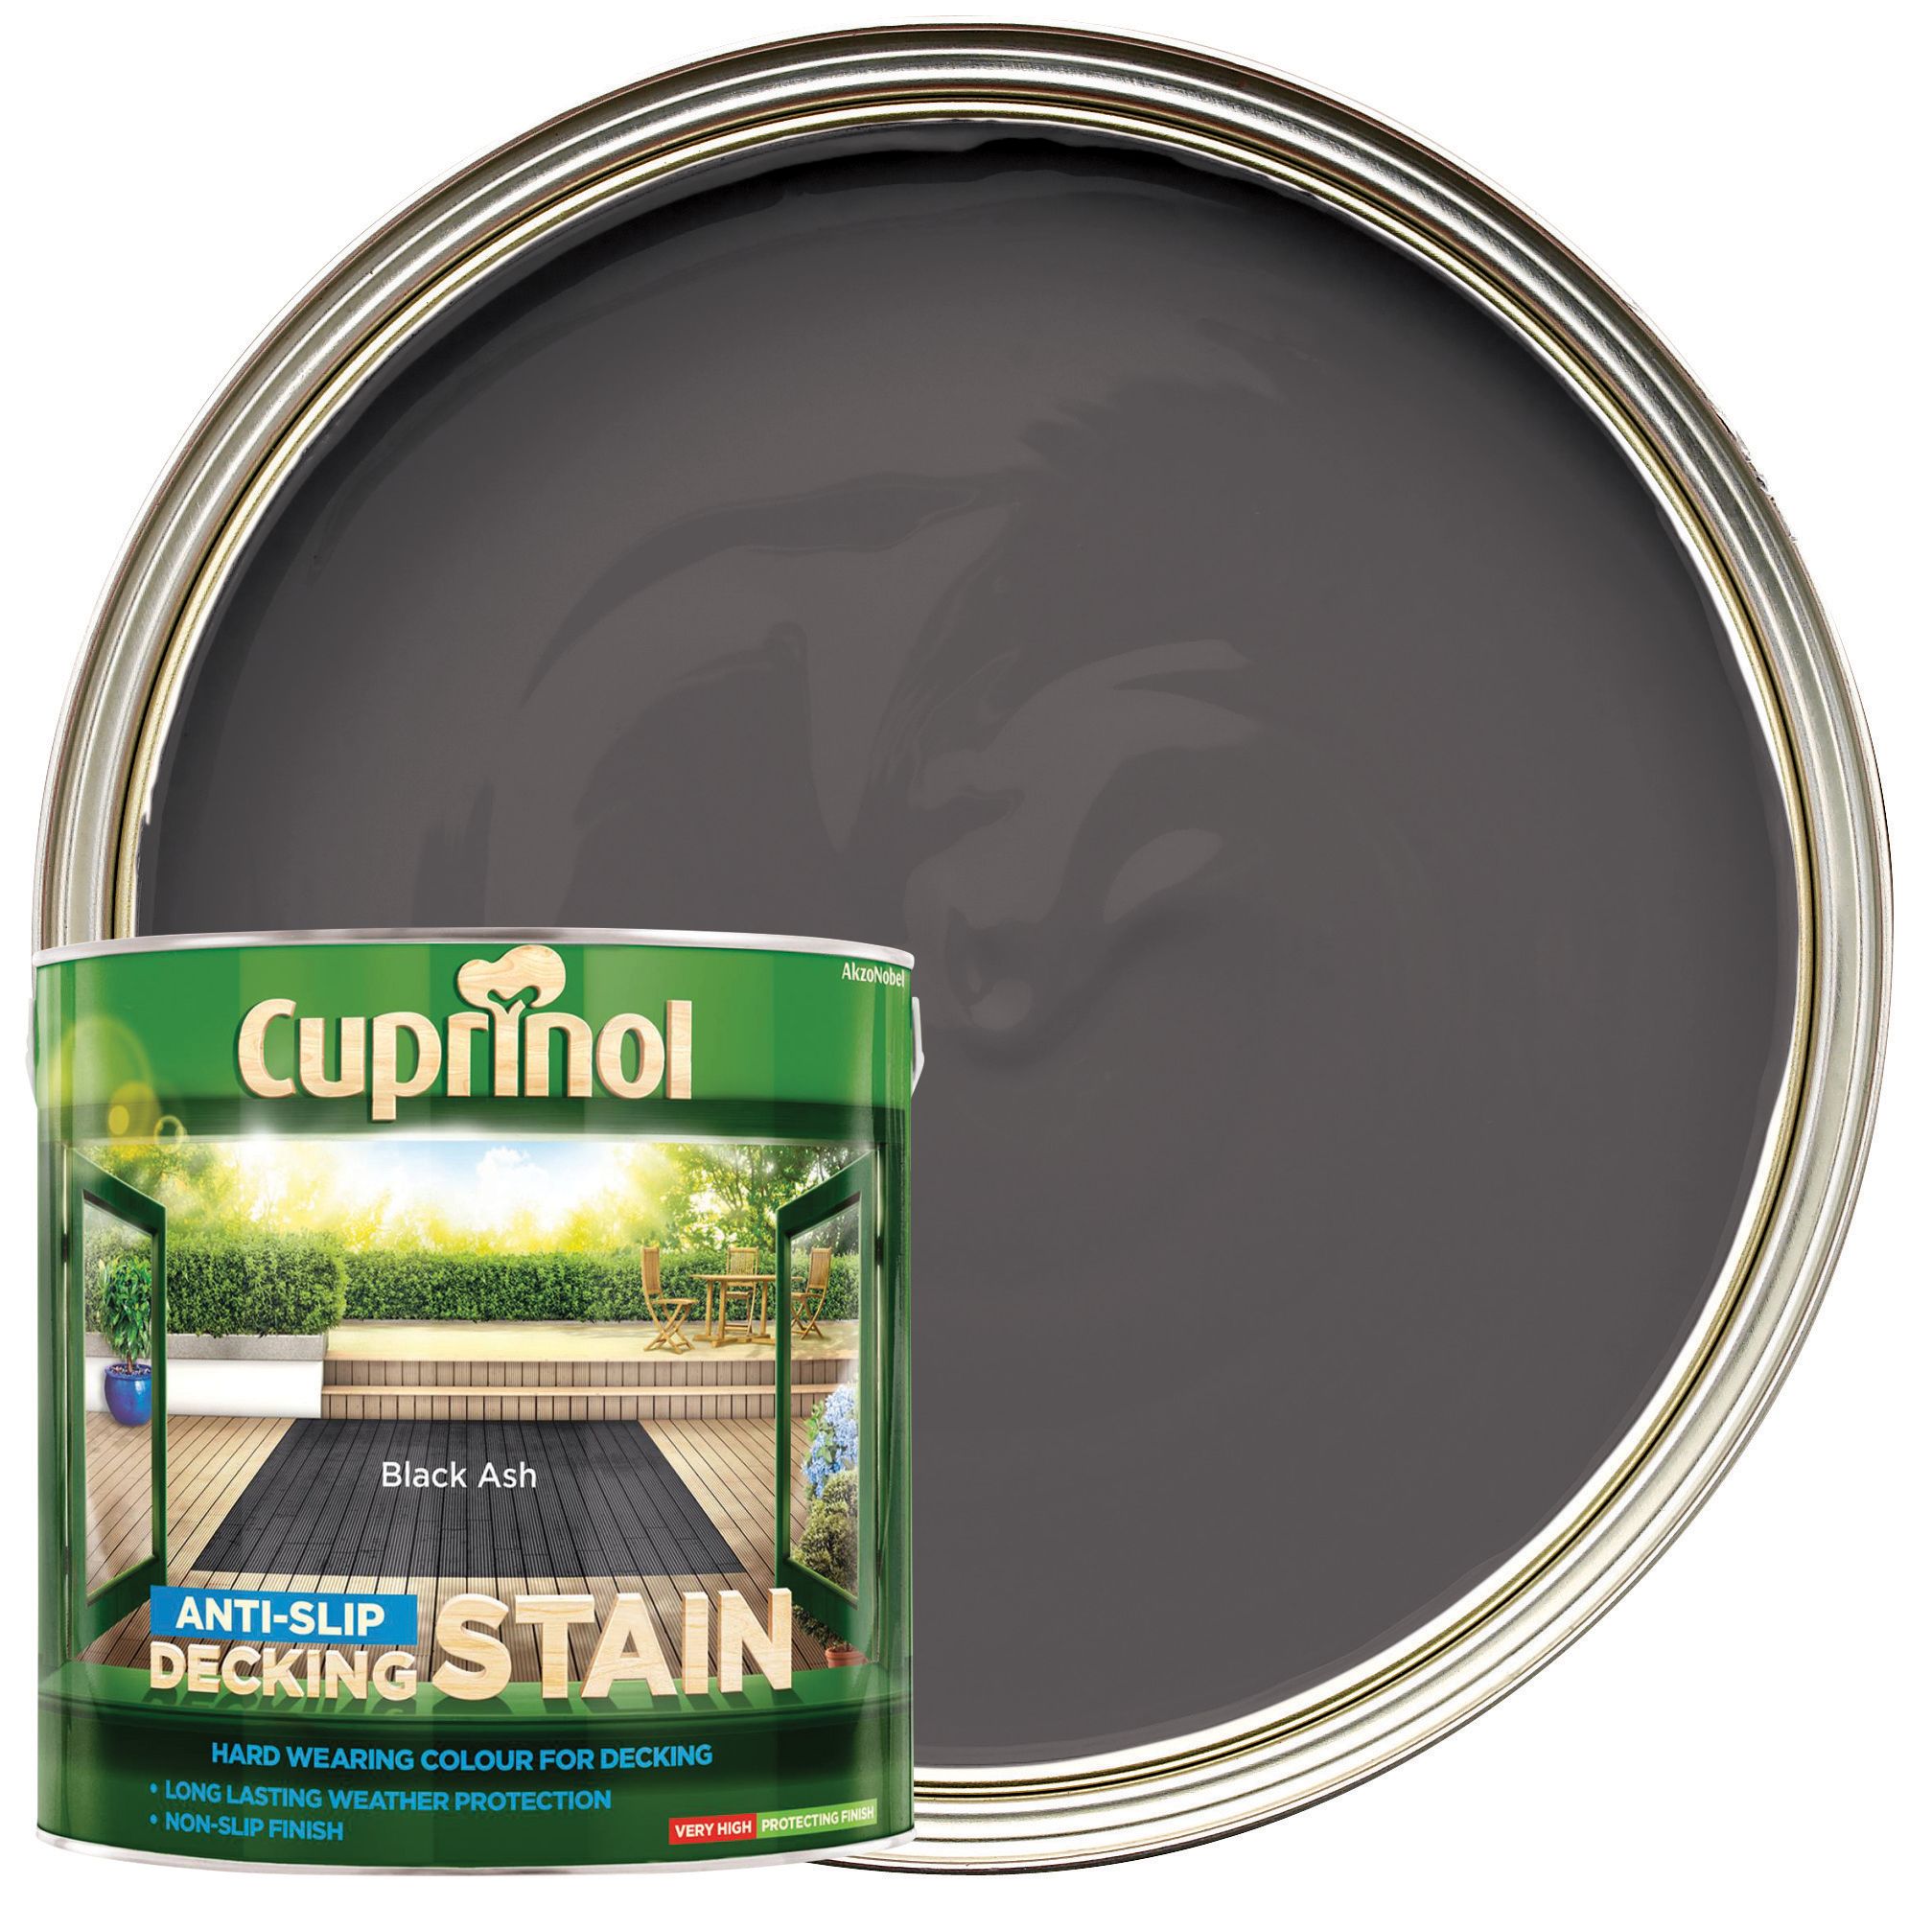 Image of Cuprinol Anti-Slip Decking Stain - Black Ash 2.5L